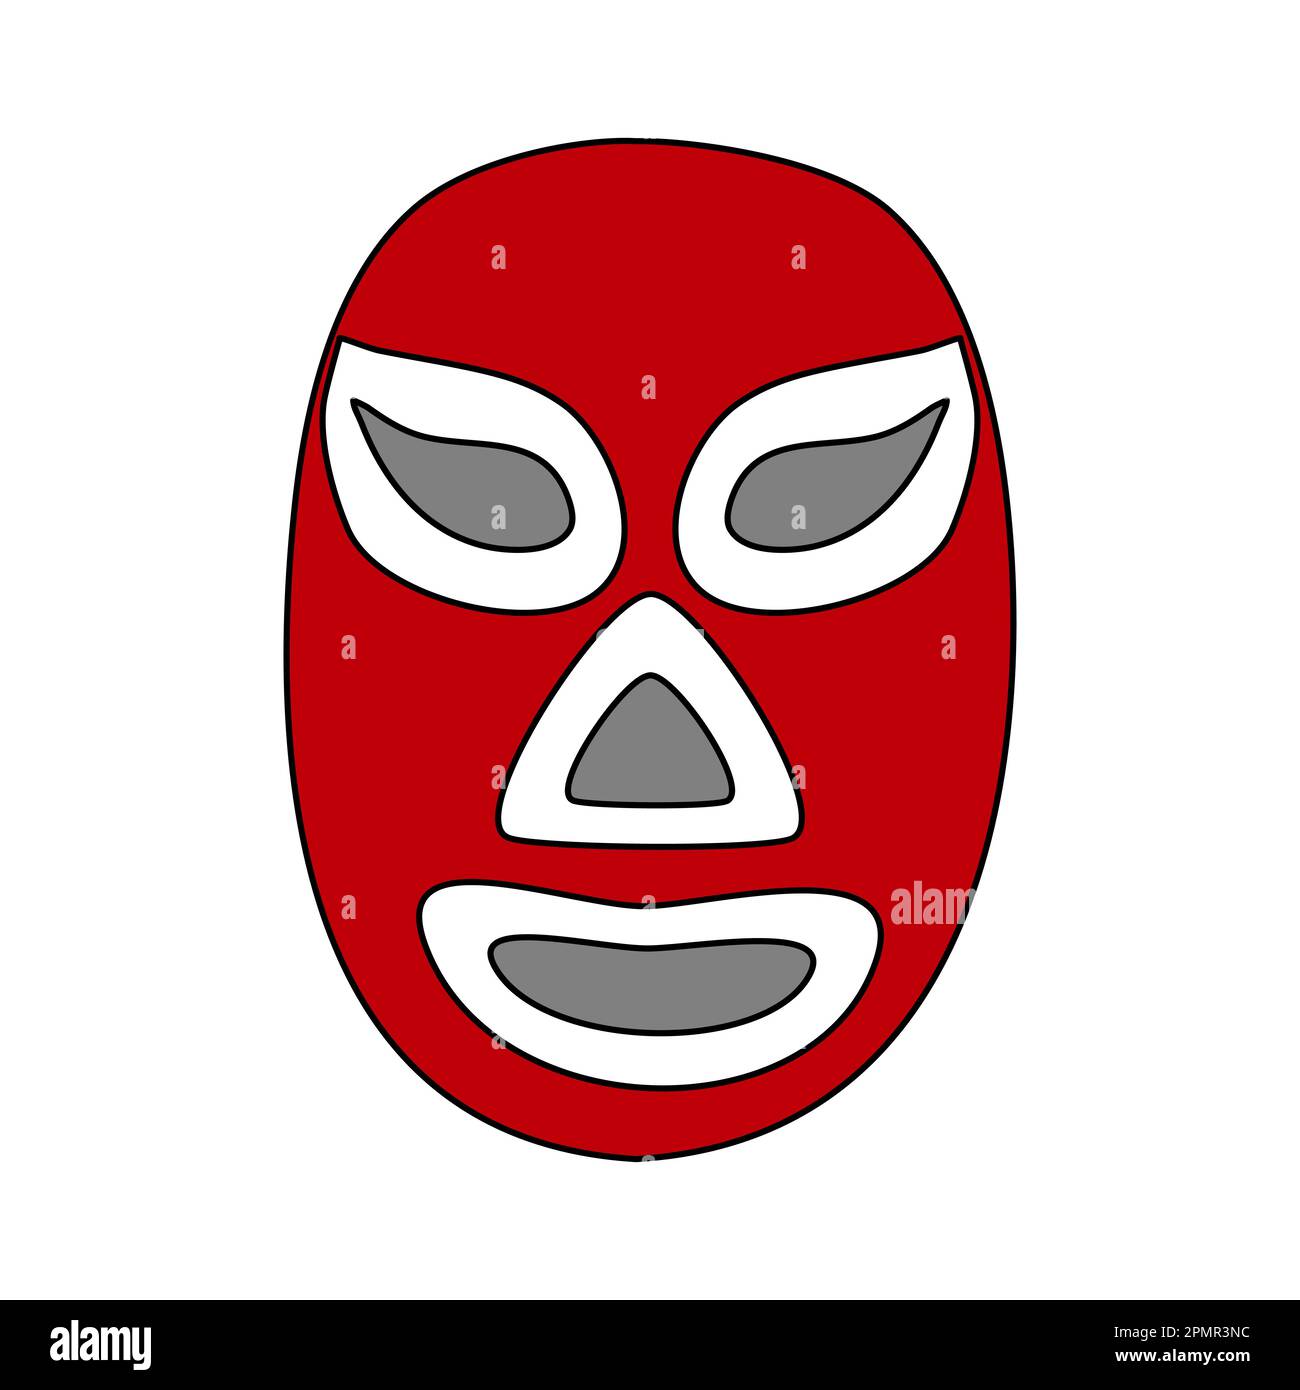 Mexikanische Wrestling Maske Lucha libre oder Luchador Maske, Doodle Stil Vektor Illustration Stock Vektor